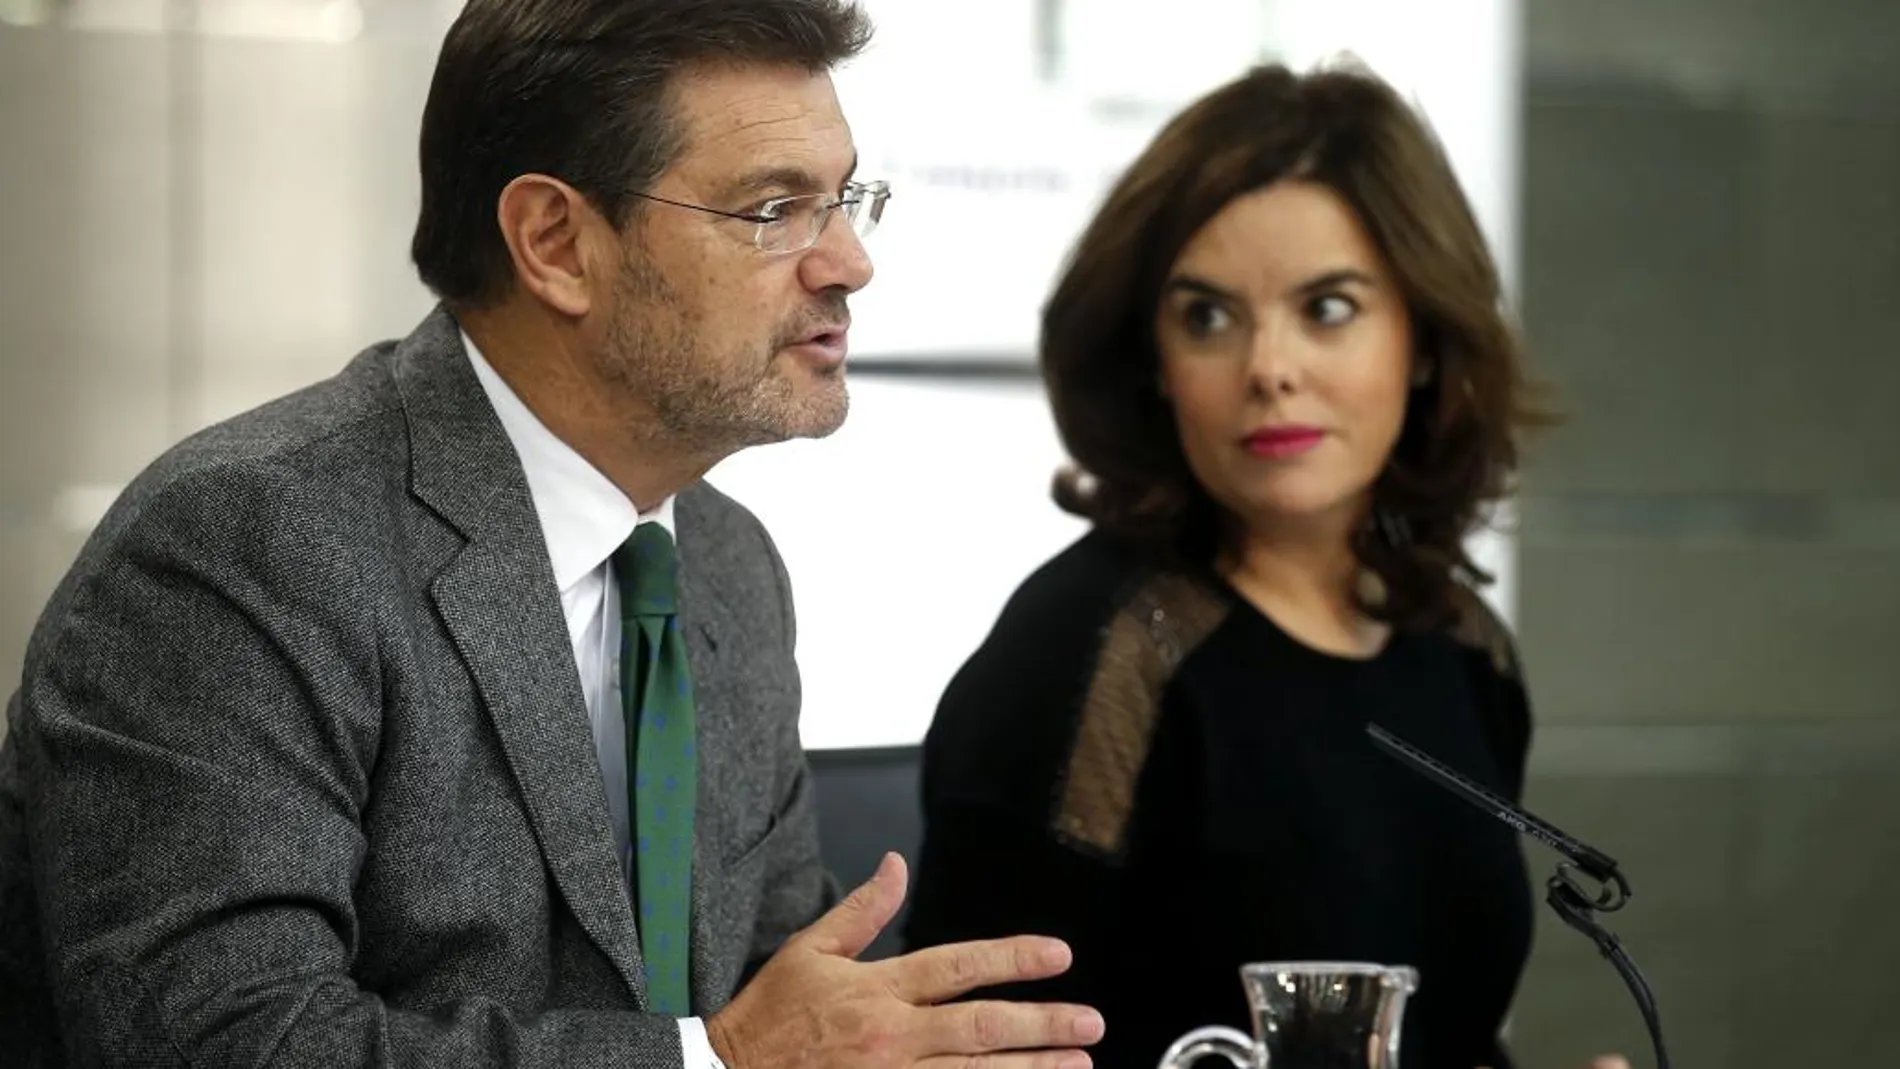 La vicepresidenta del Gobierno, Soraya Sáenz de Santamaría, y el ministro de Justicia, Rafael Catalá